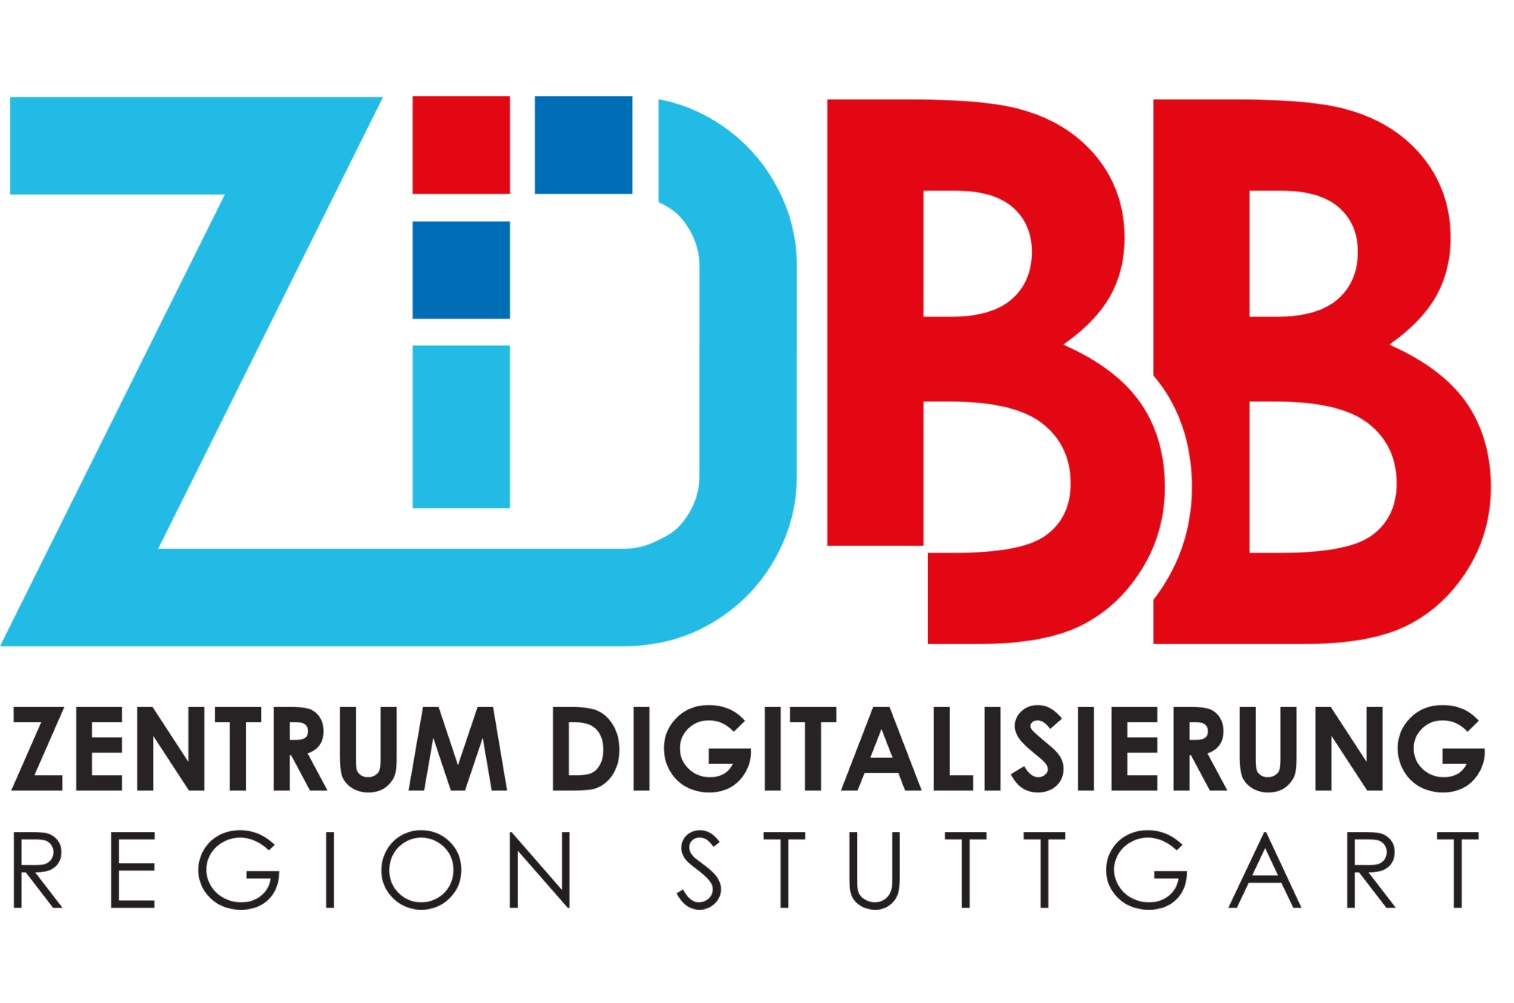 ZDBB Logo